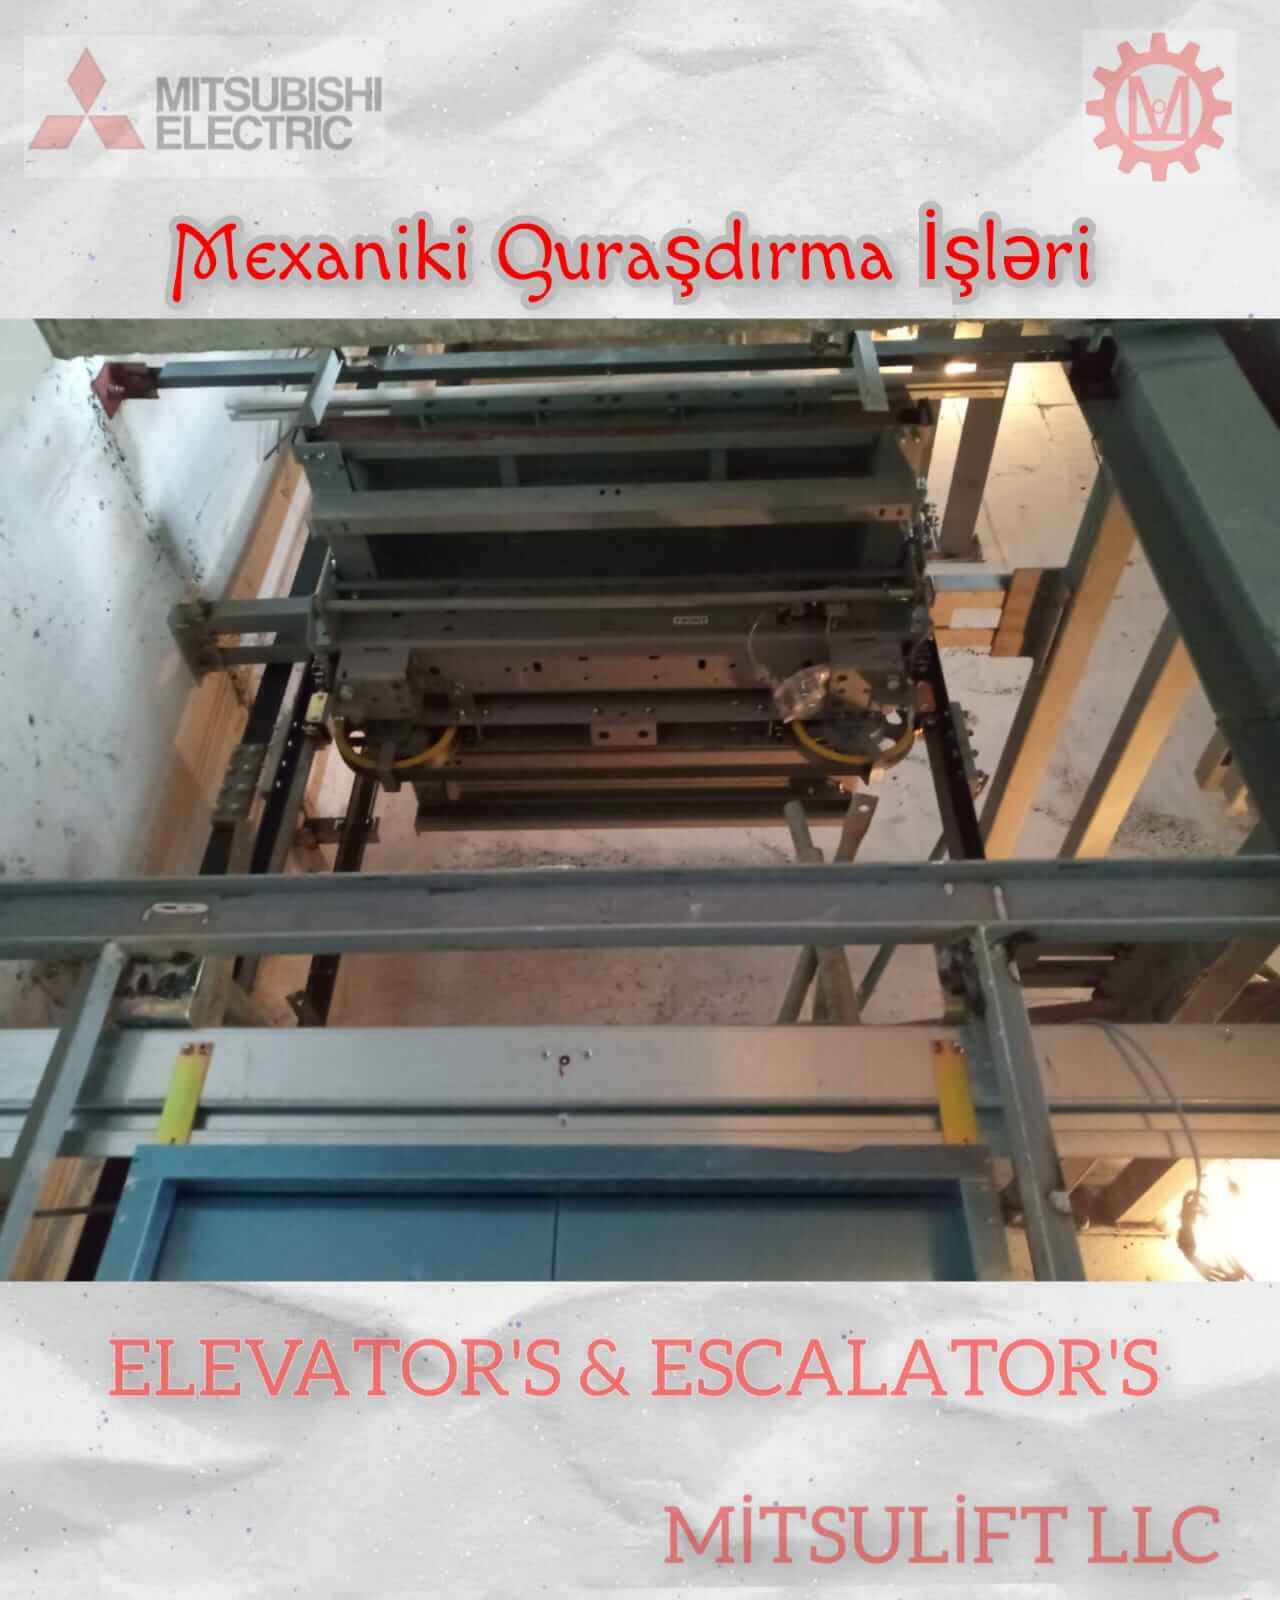 hyundai-lift-qurasdirma-11